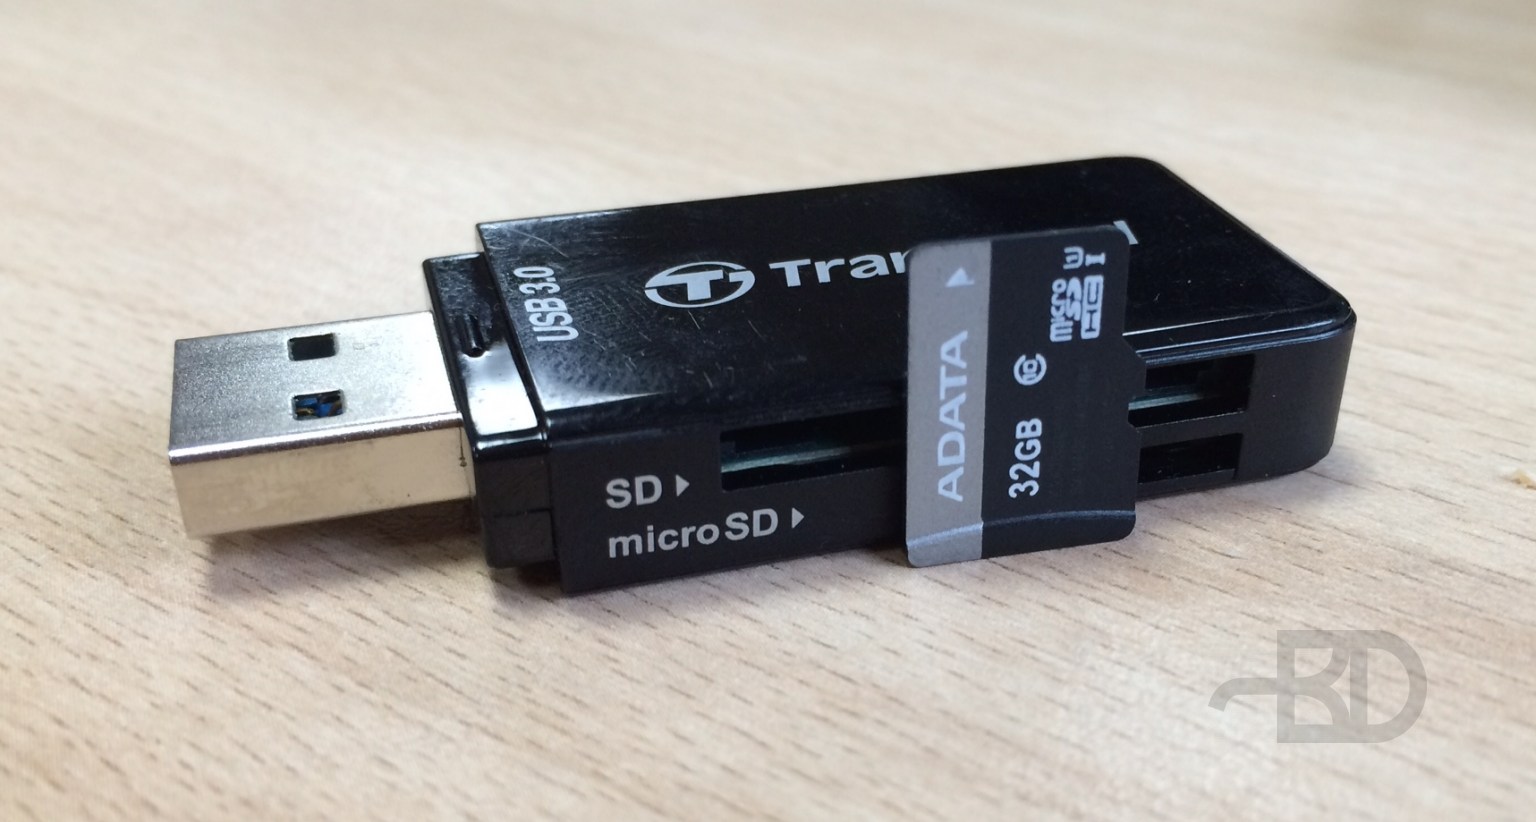 Карта MicroSD и карт-ридер